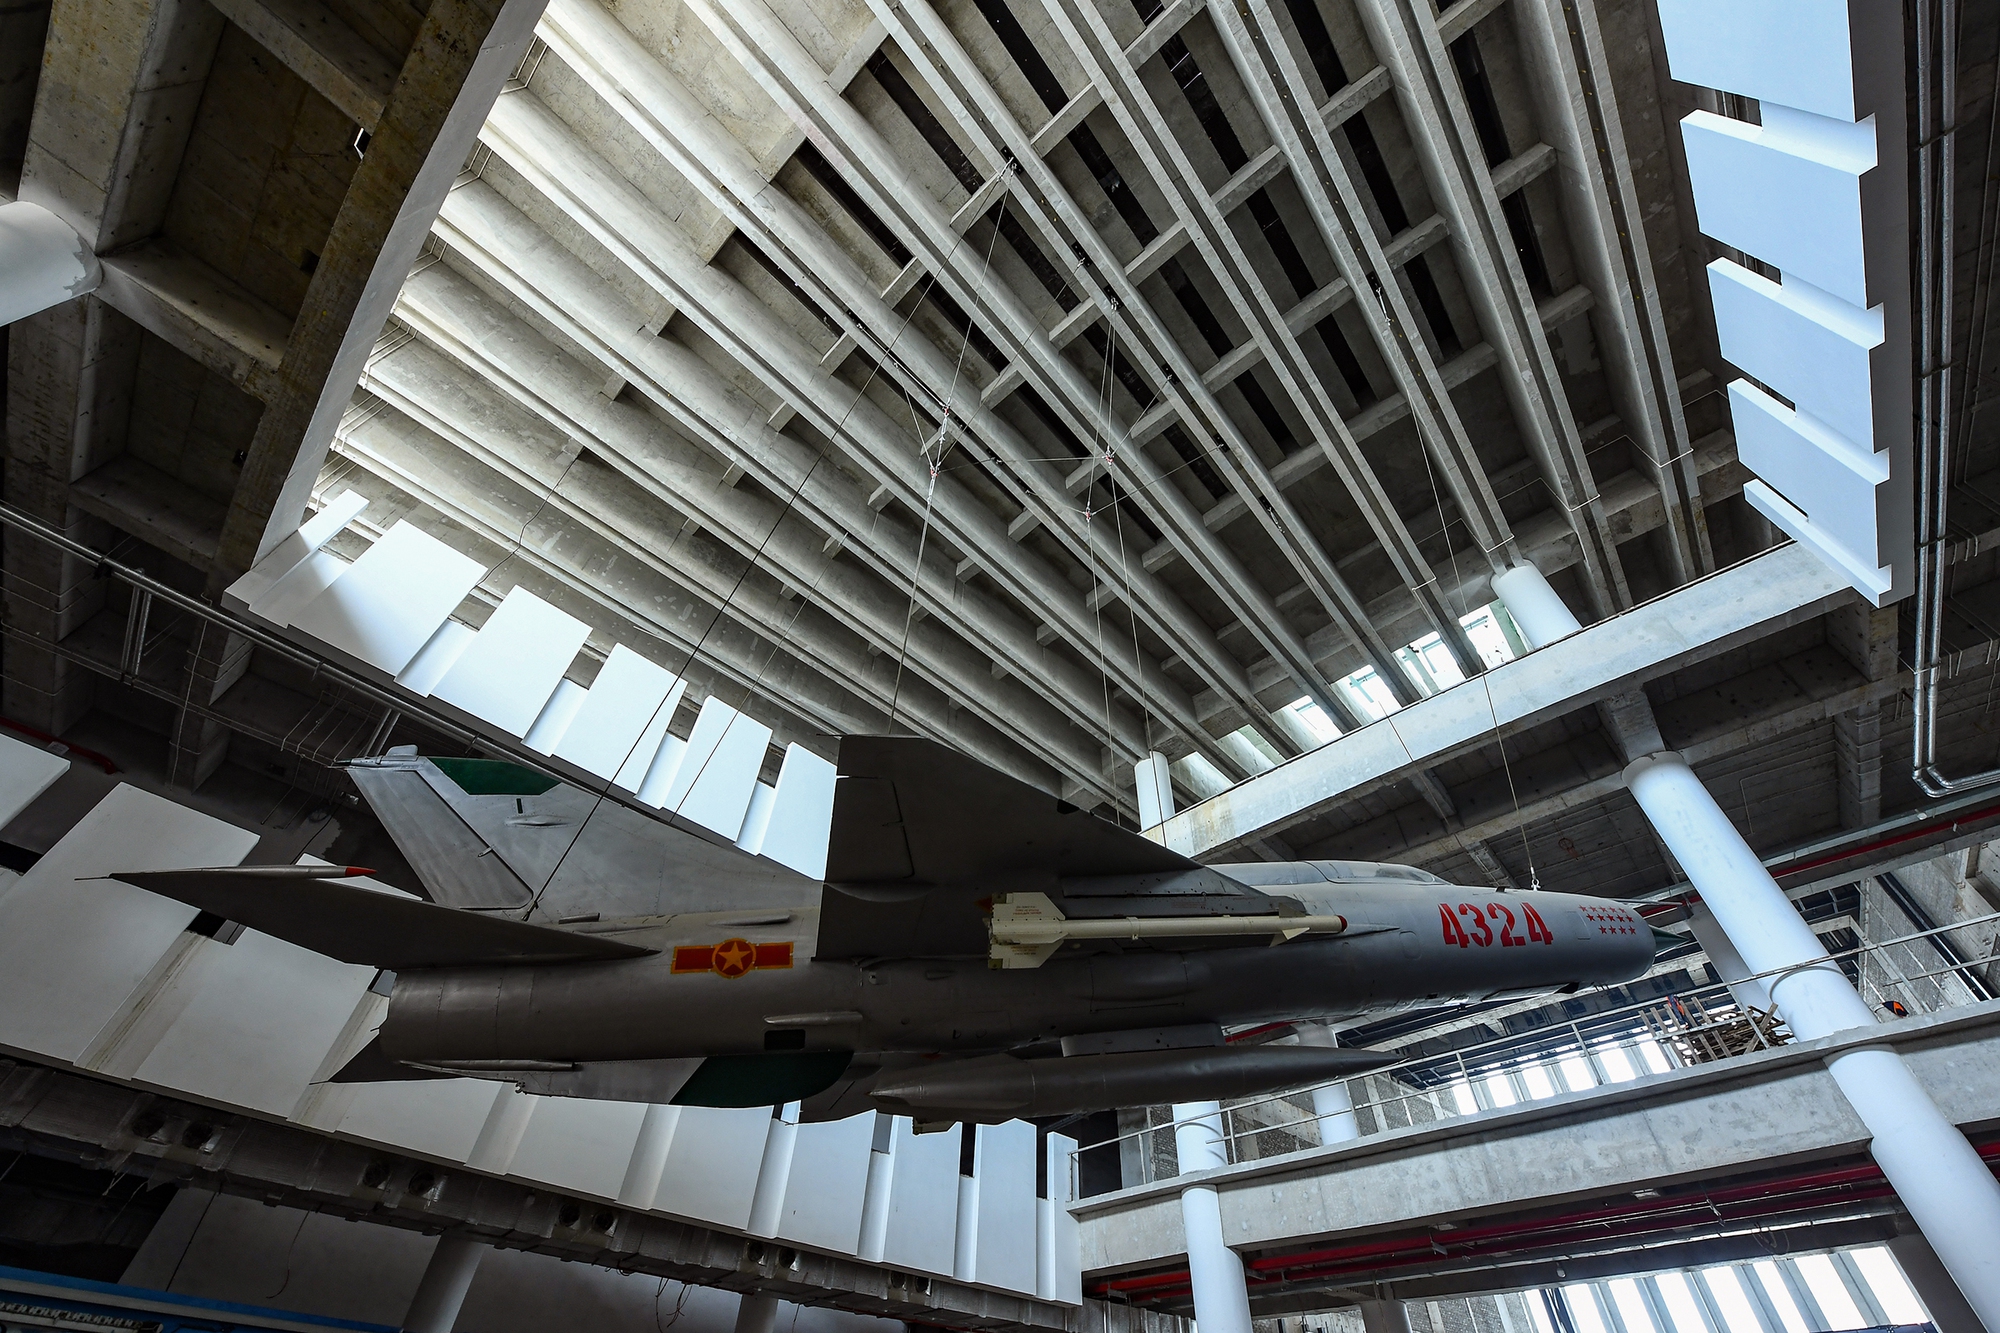 Khám phá loạt máy bay, xe tăng, khí tài quân sự 'khủng' tại bảo tàng rộng 740.000m2 ở Hà Nội - Ảnh 6.